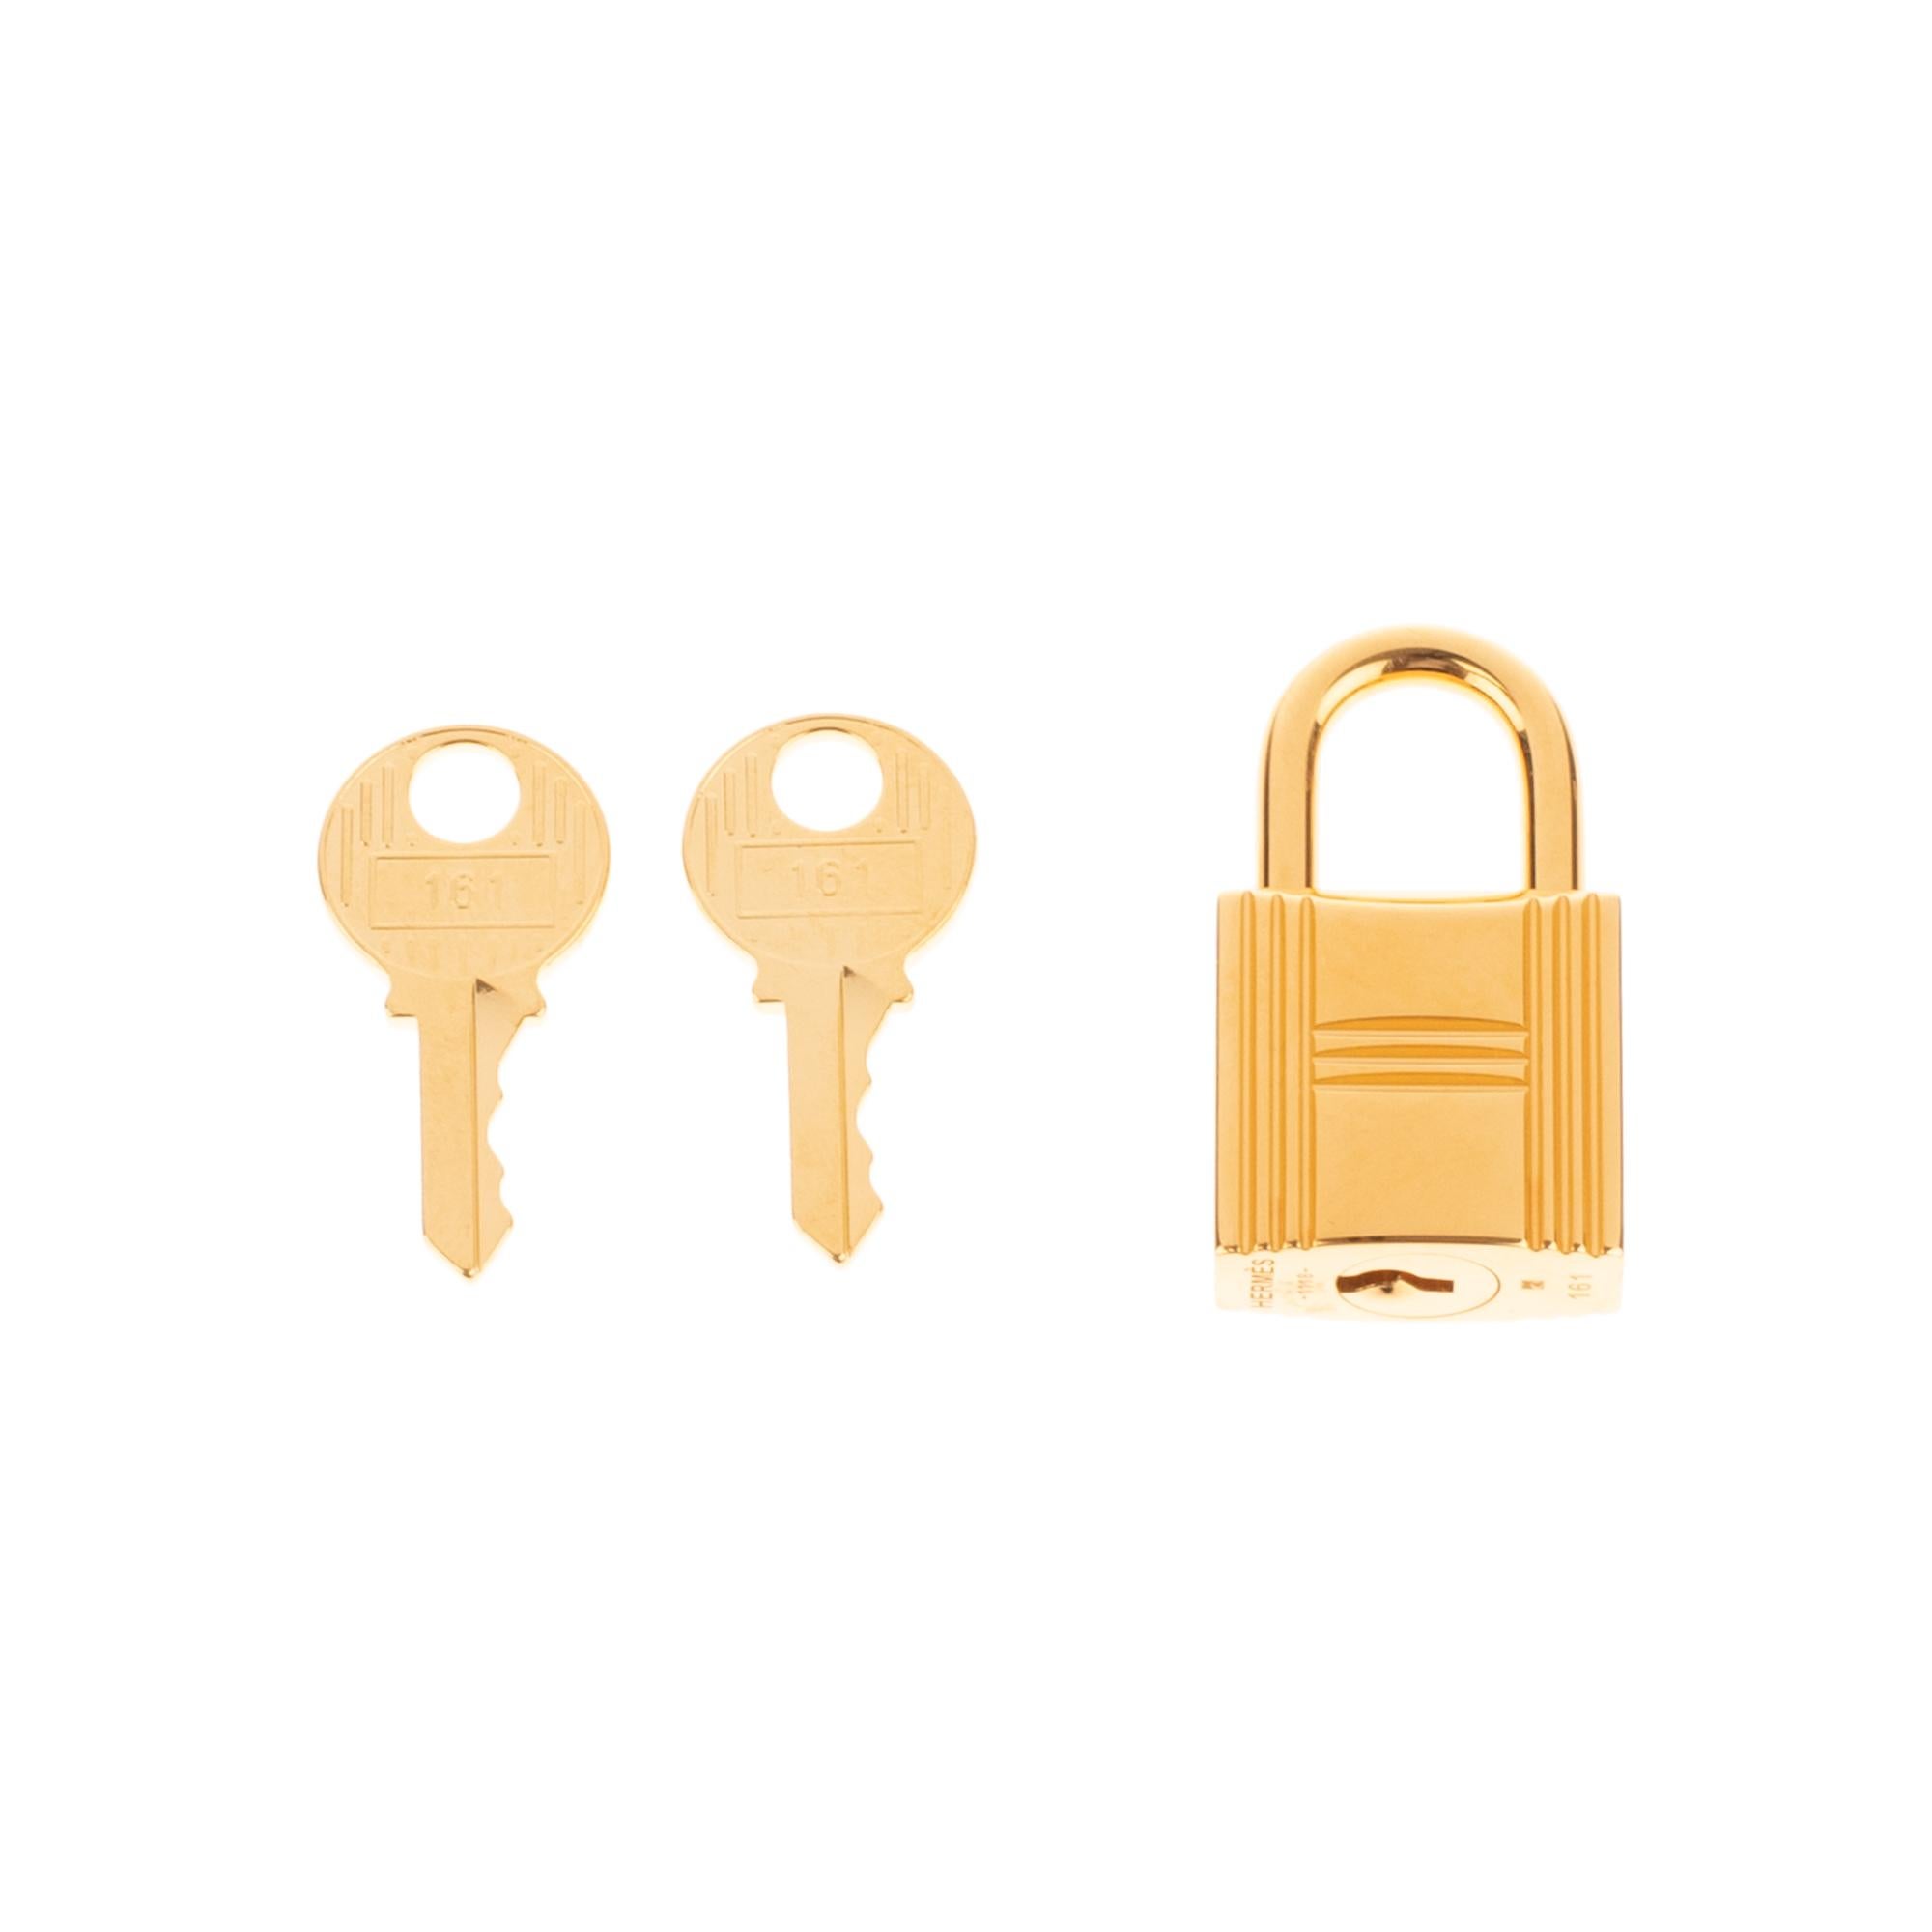 Hermès vergoldetes Metall-Vorhängeschloss für Birkin- und Kelly-Taschen aus goldenem Metall mit zwei Schlüsseln
Unterschrift: Hermès
Abmessungen:  3,5 x 2 x 2 cm (1,4 x 0,8 x 0,8 Zoll)

Neuer Zustand unter Plastik mit 2 Schlüsseln